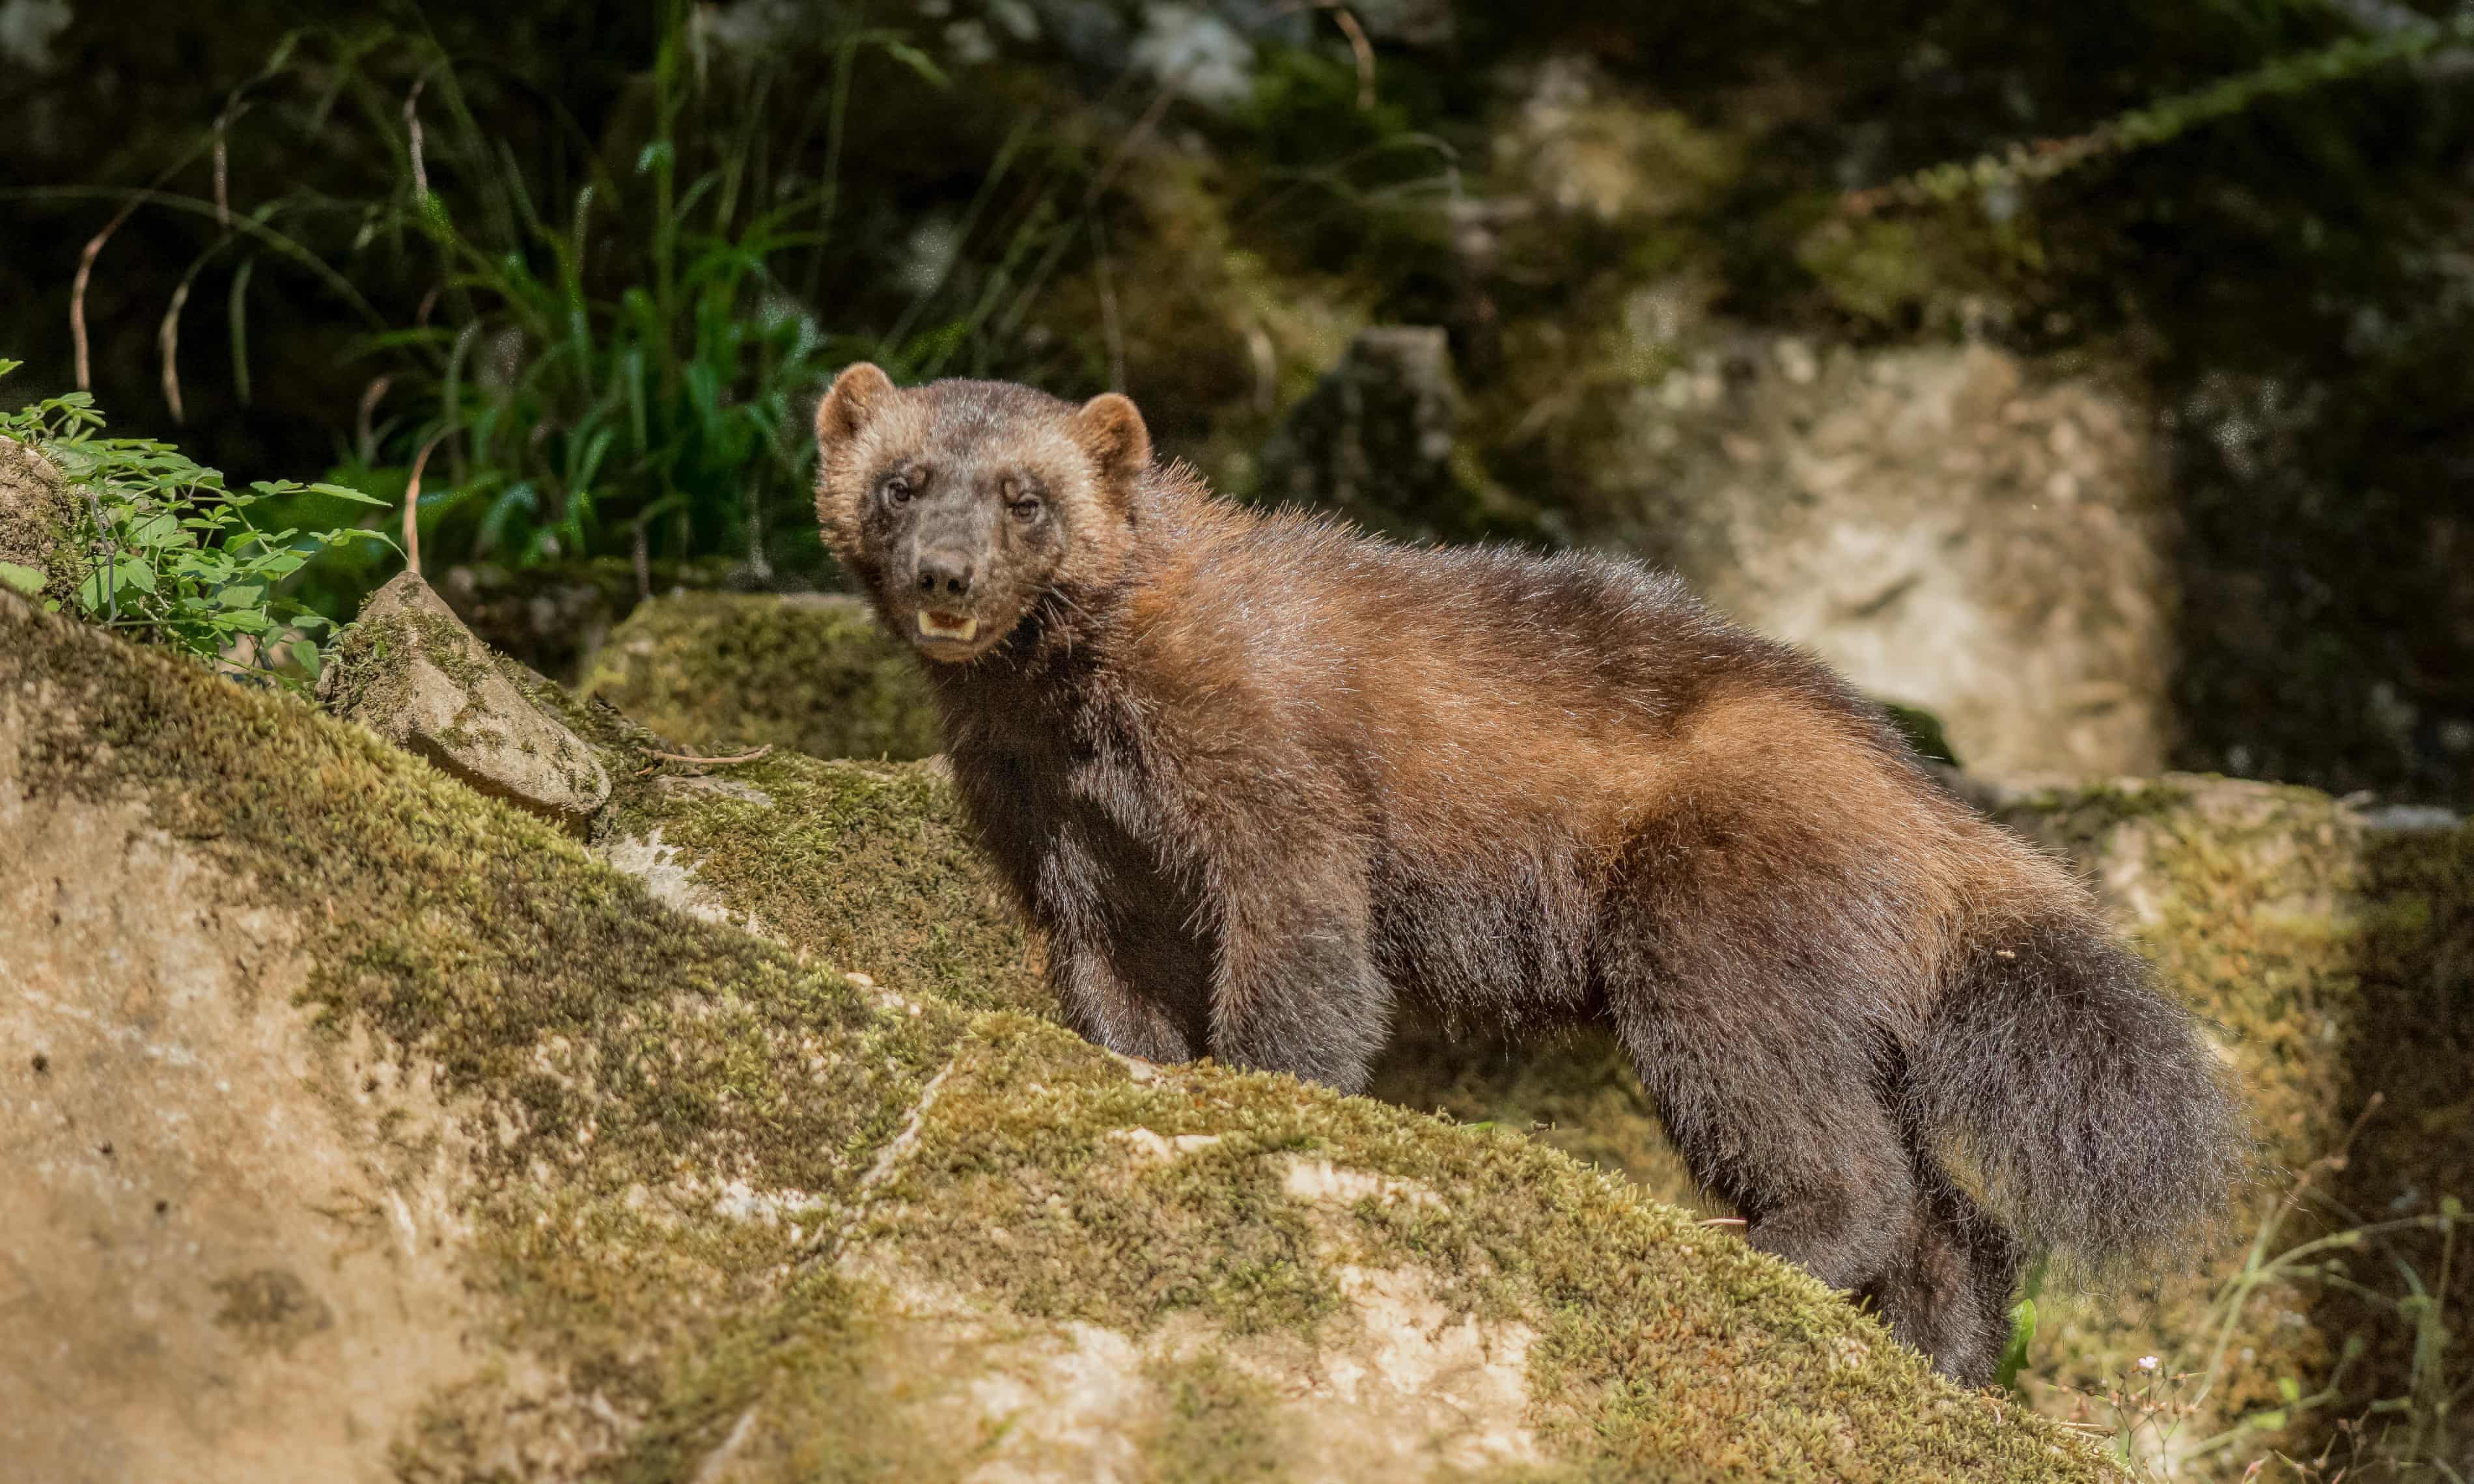 Colorado could bring back wolverines in an unprecedented rewilding effort (theguardian.com)